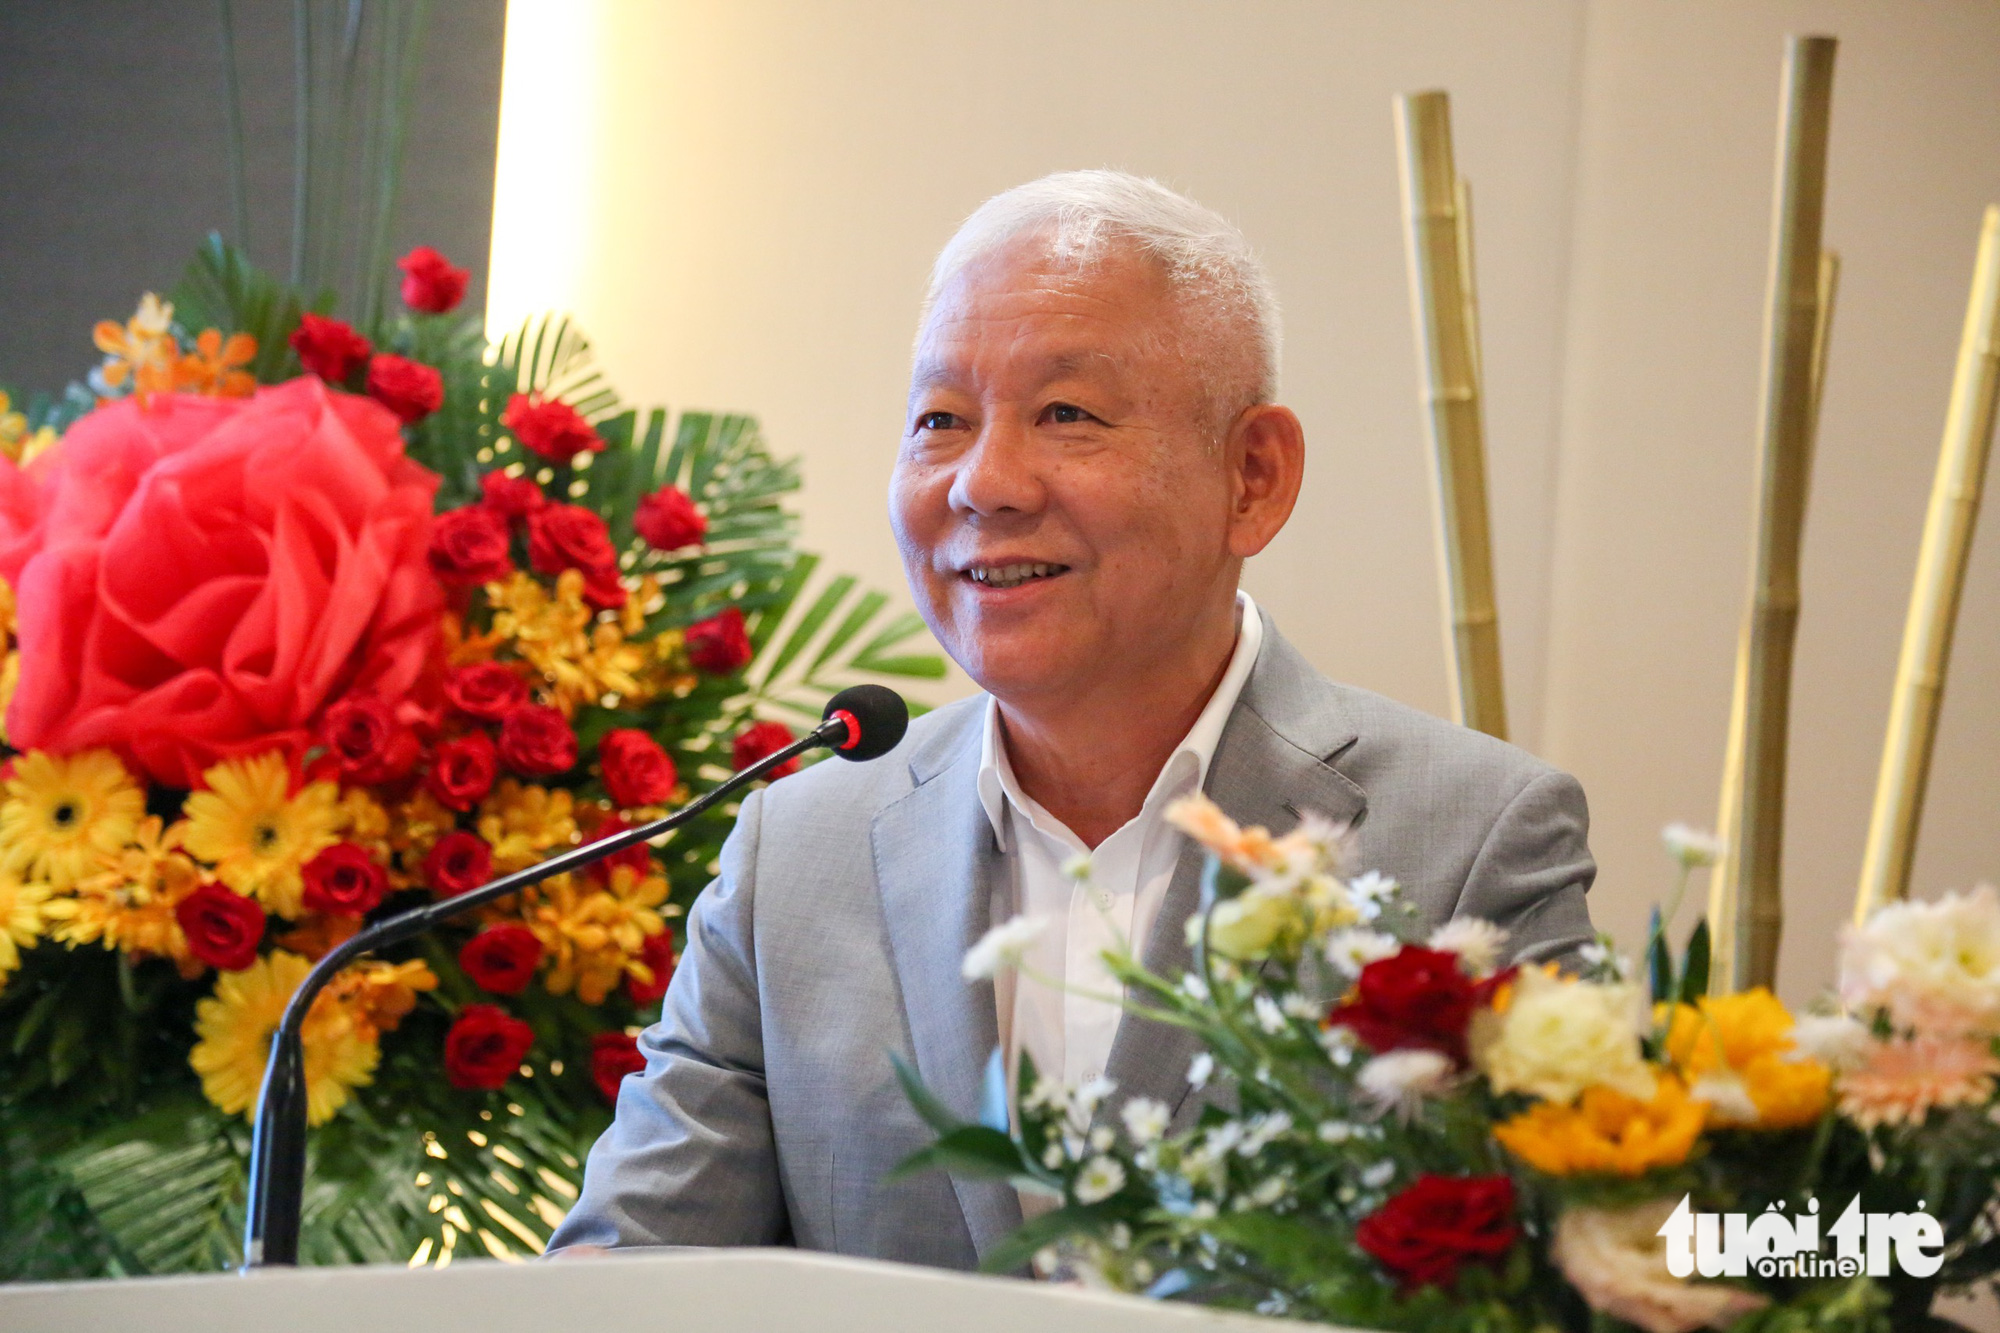 Đại diện BTC, ông Trần Văn - nguyên phó chủ nhiệm Ủy ban Tài chính - Ngân sách Quốc Hội, viện trưởng Viện chiến lược phát triển kinh tế số - dành lời cảm ơn và kêu gọi sự đồng hành của các nhà hảo tâm trong các giai đoạn tiếp theo của chương trình.